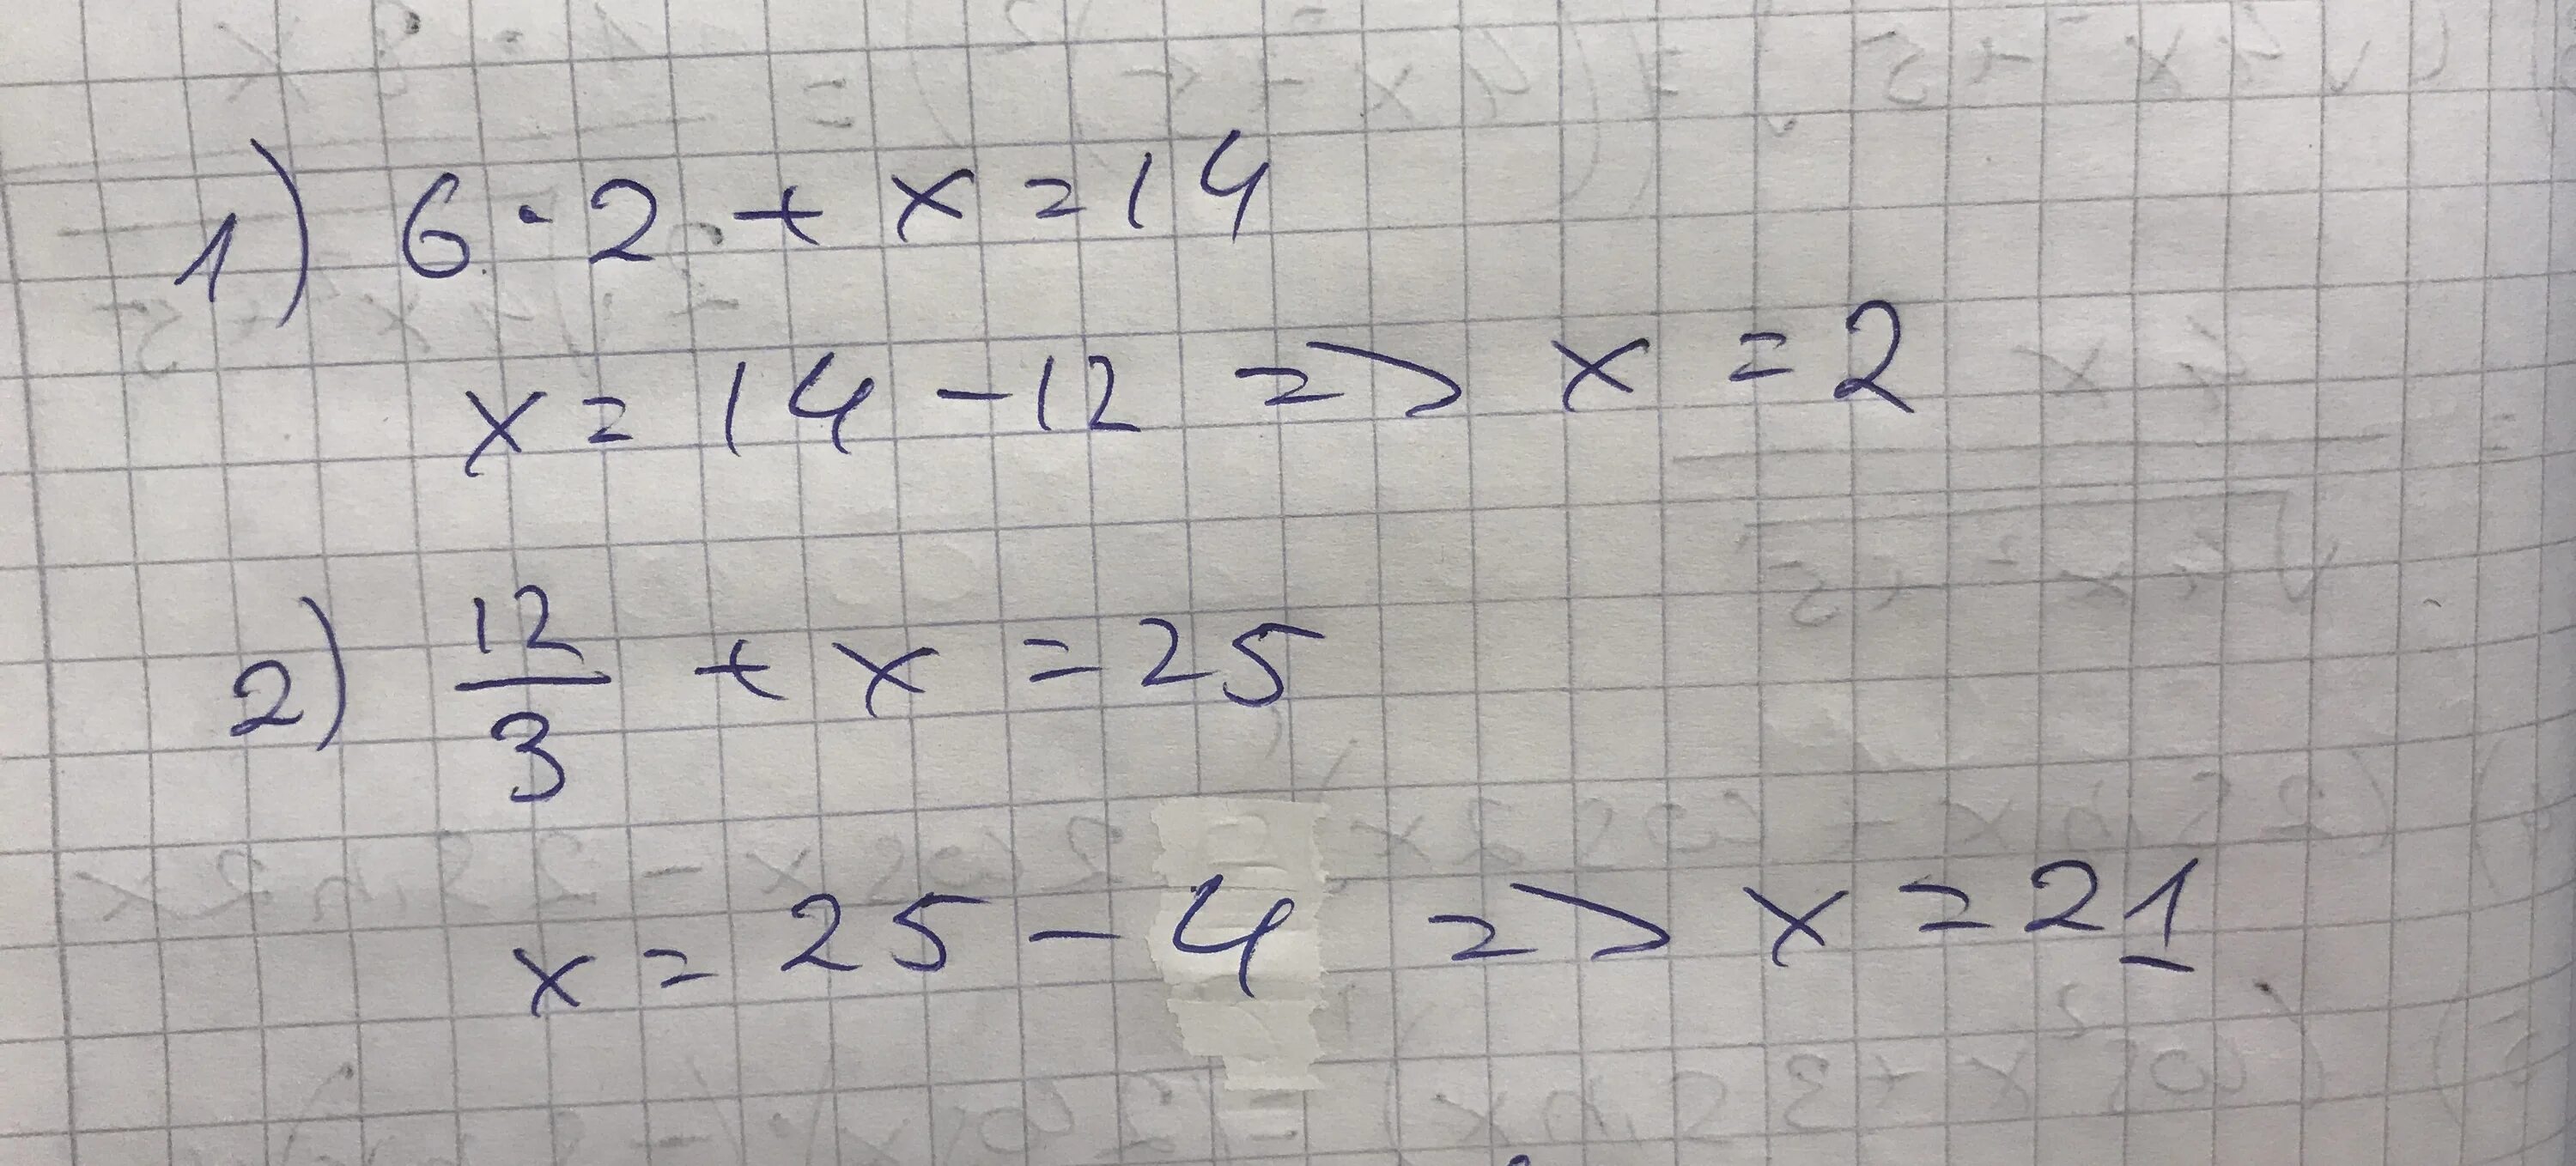 Реши уравнение 14 минус икс равно 8. Решение уравнения 12 разделить на Икс равно 3. Уравнение Икс разделить на 3 равно 6. Минус 2 Икс деленное на 5 и минус 2 Икс деленное на 3. Икс равно.